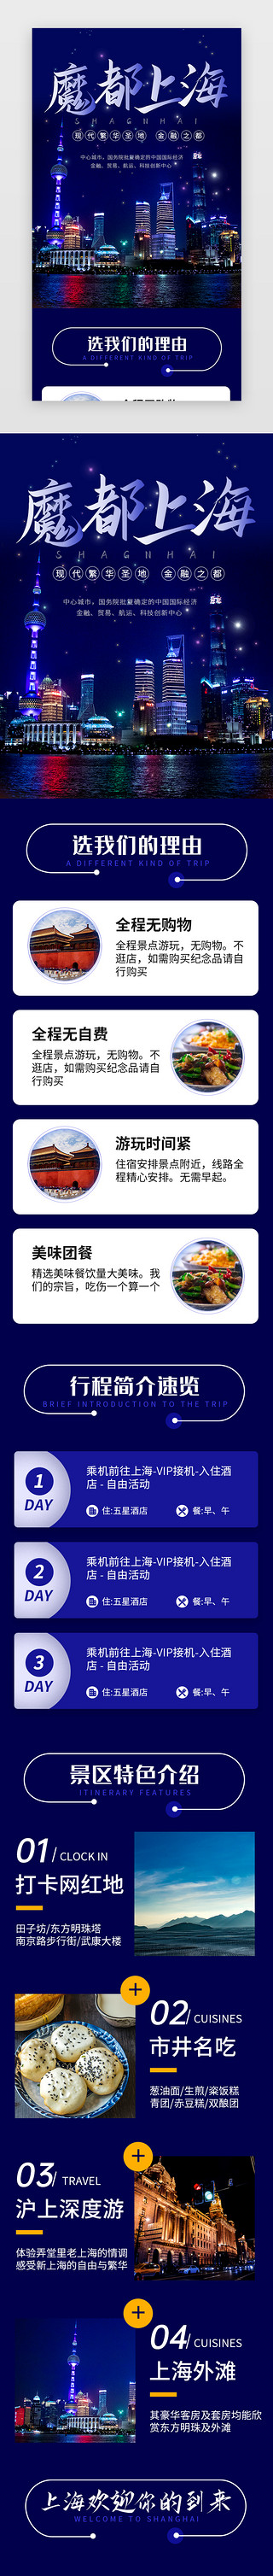 广州景点UI设计素材_蓝色魔都上海旅行景点介绍H5长图海报